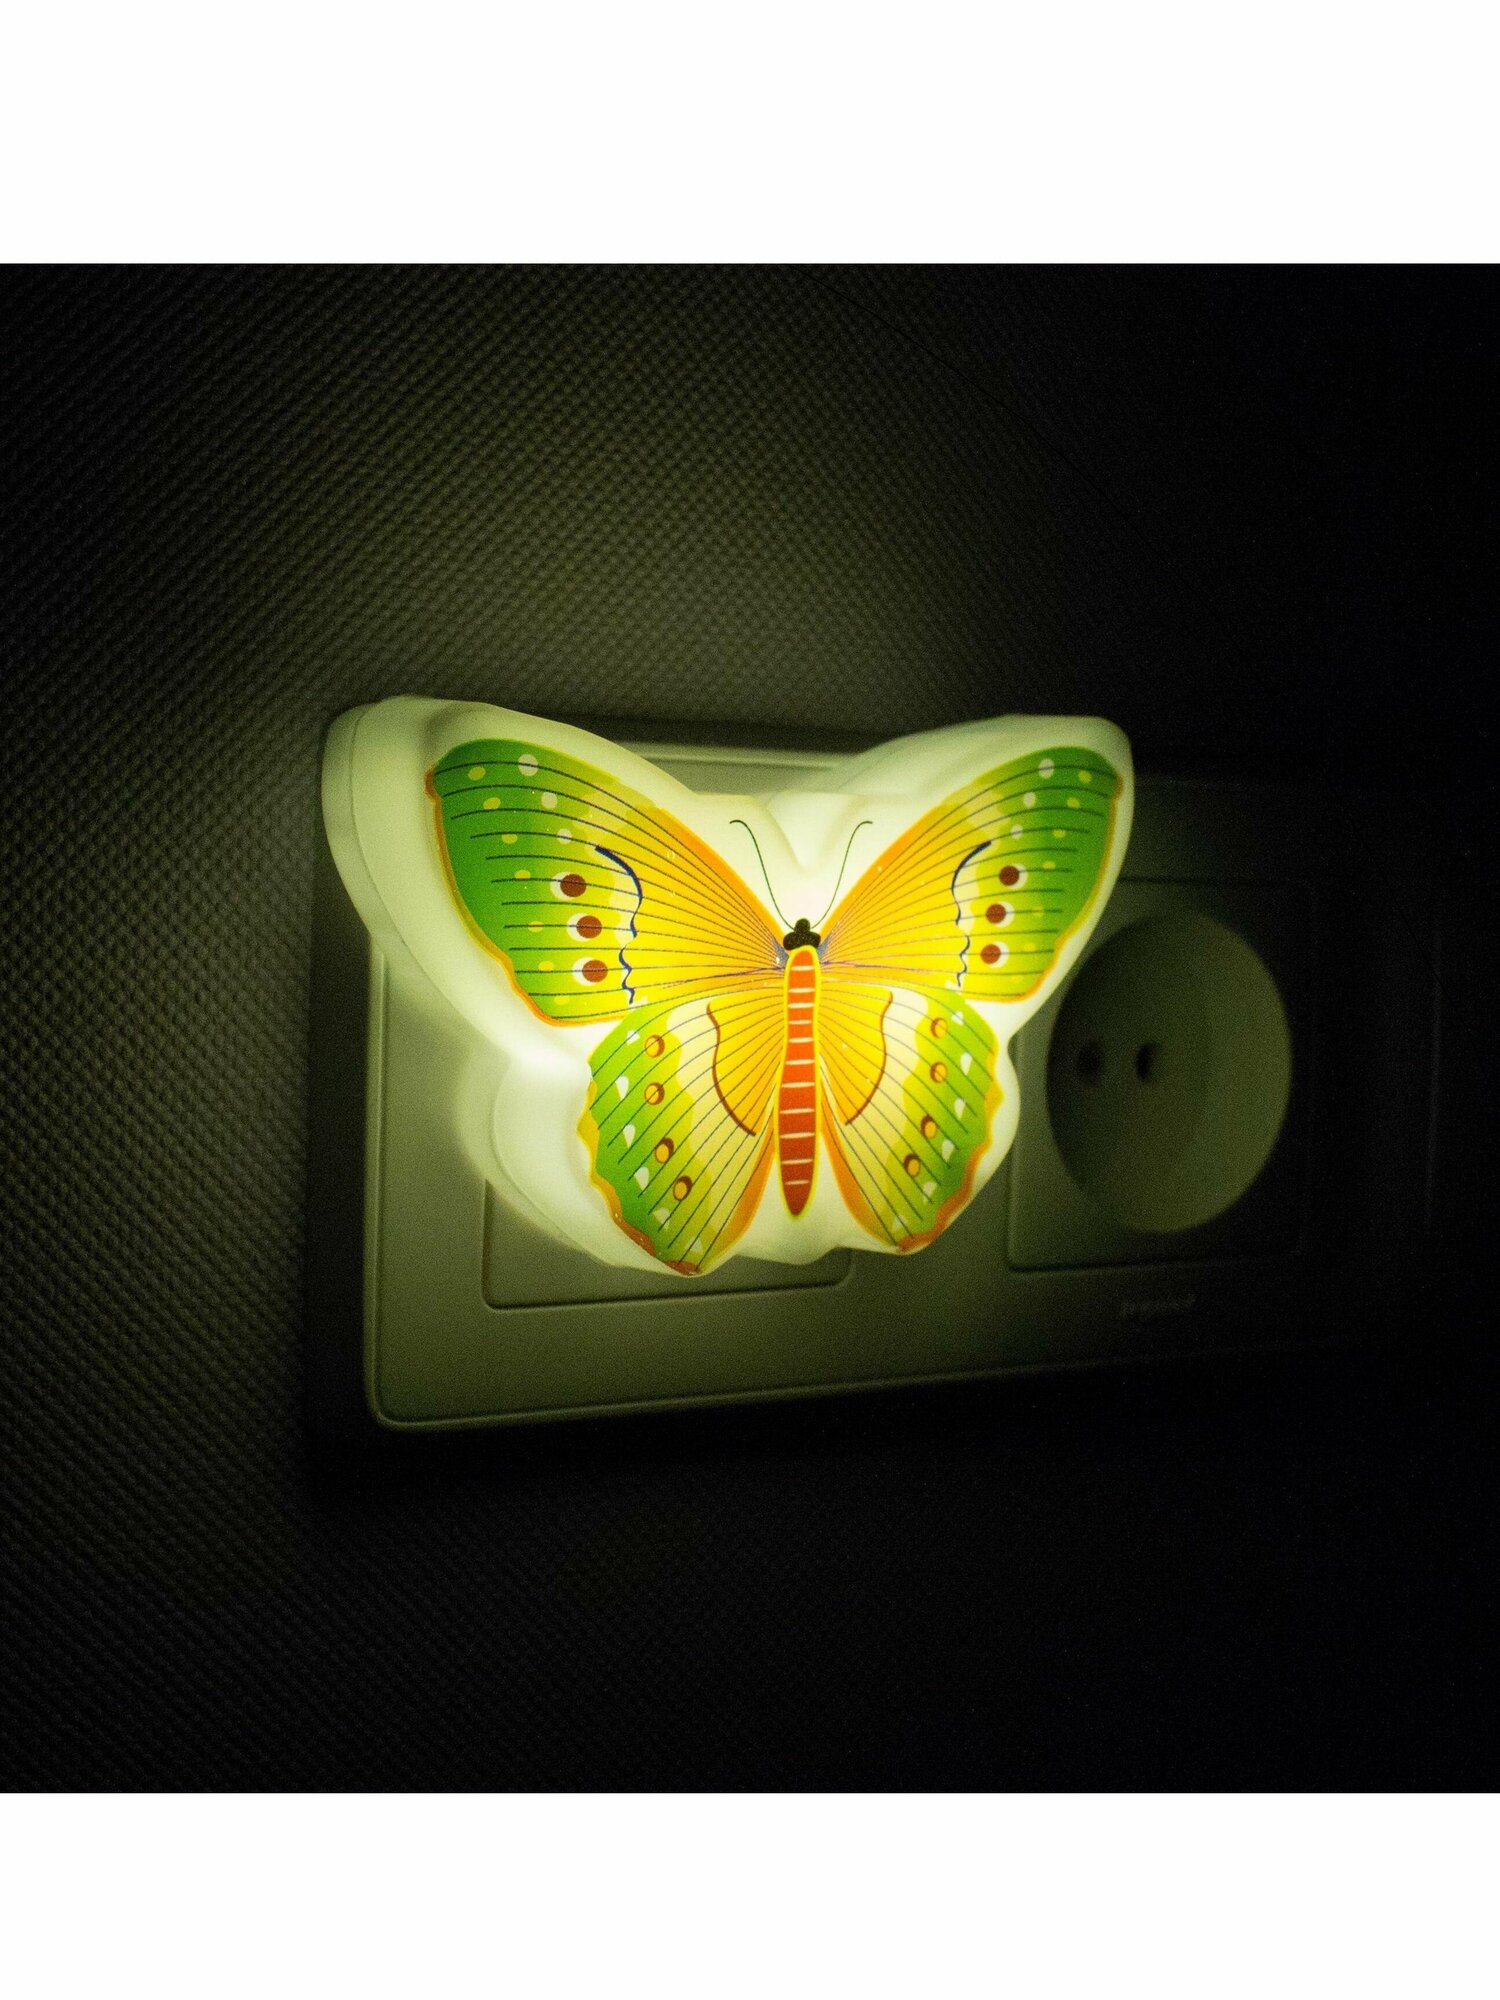 Ночник детский для сна Бабочка старт светильник в розетку , желтый